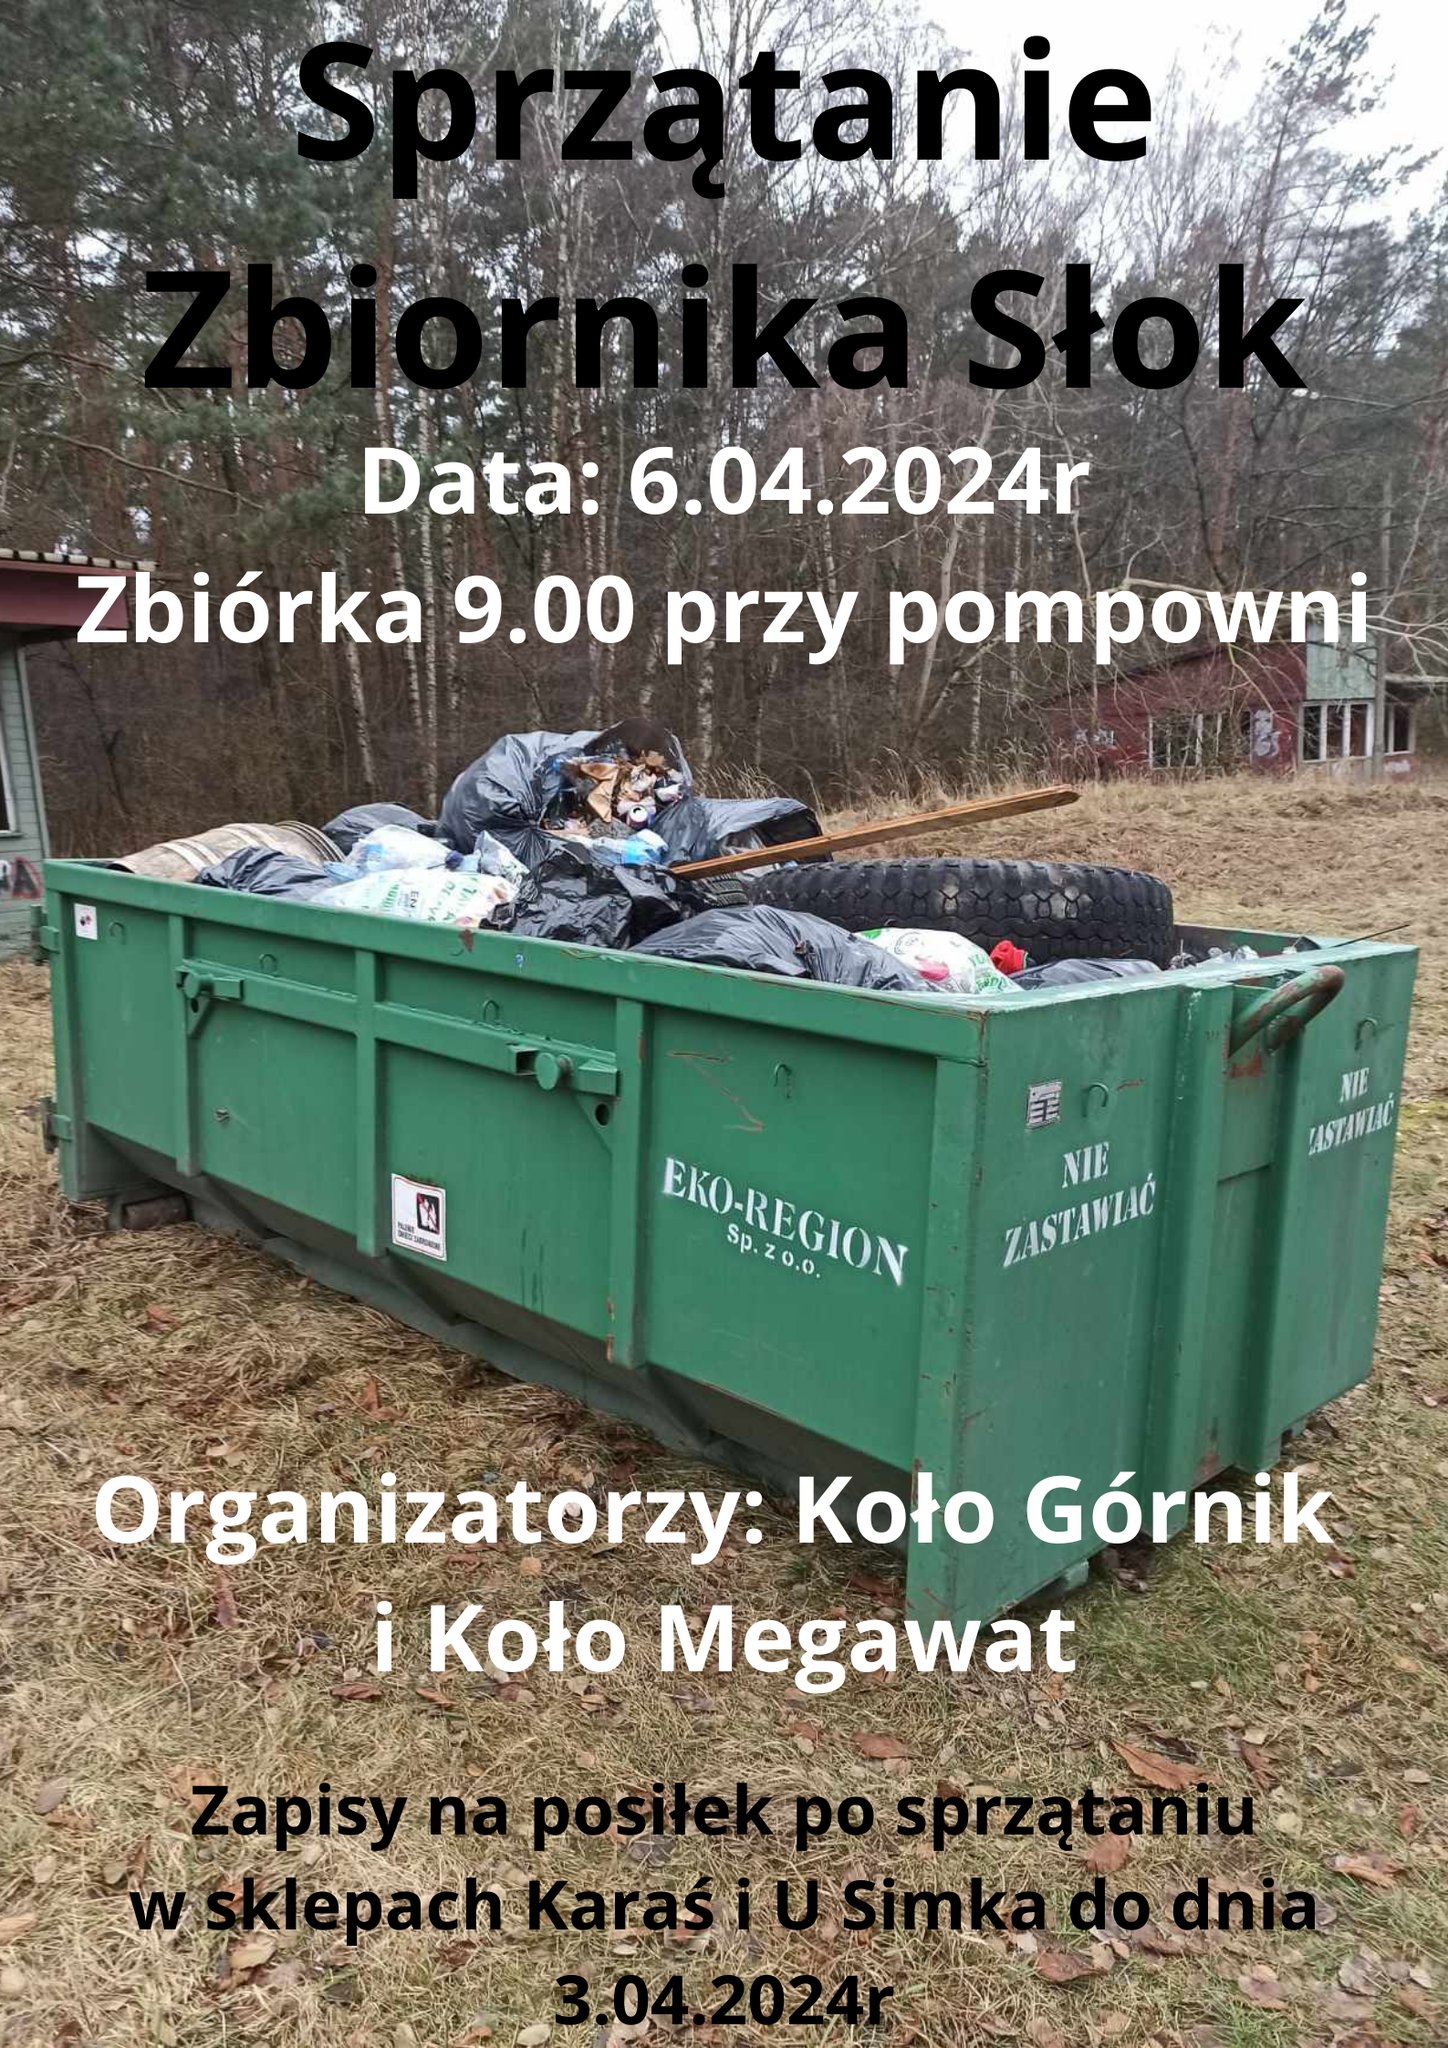 Akcja sprzątania zbiornika Słok